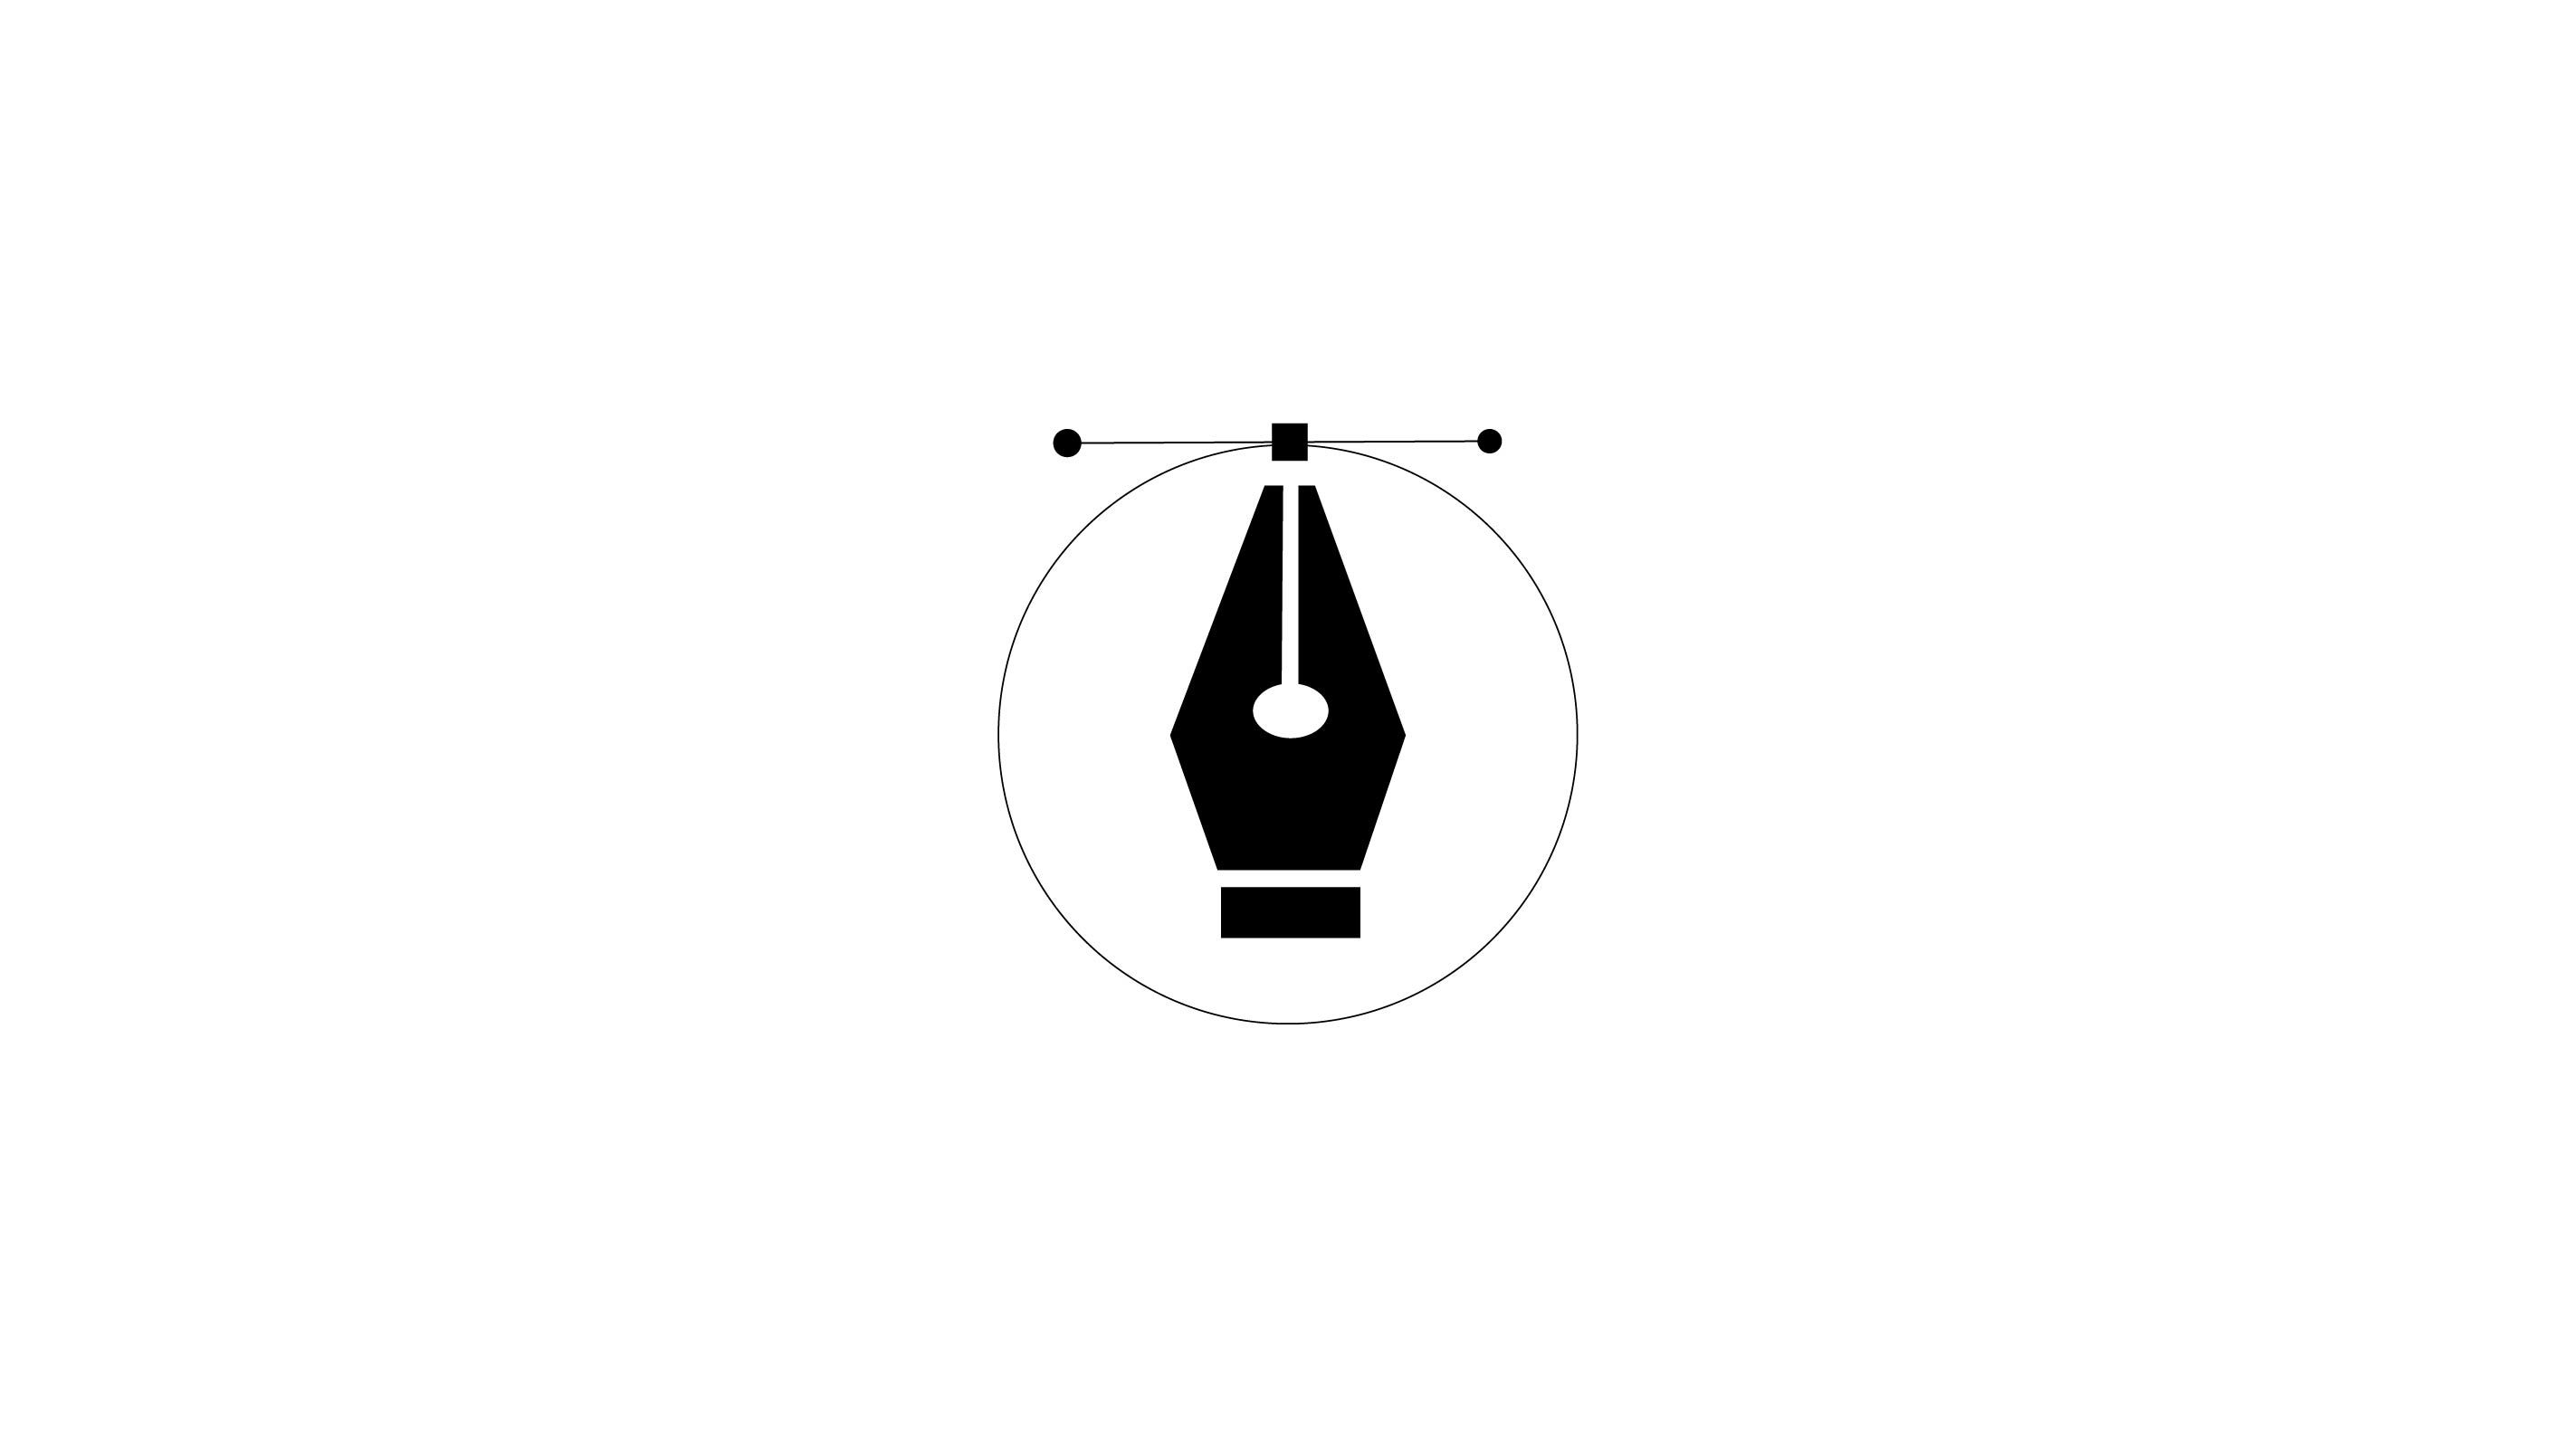 разработка дизайна логотипа за 5 000 руб.